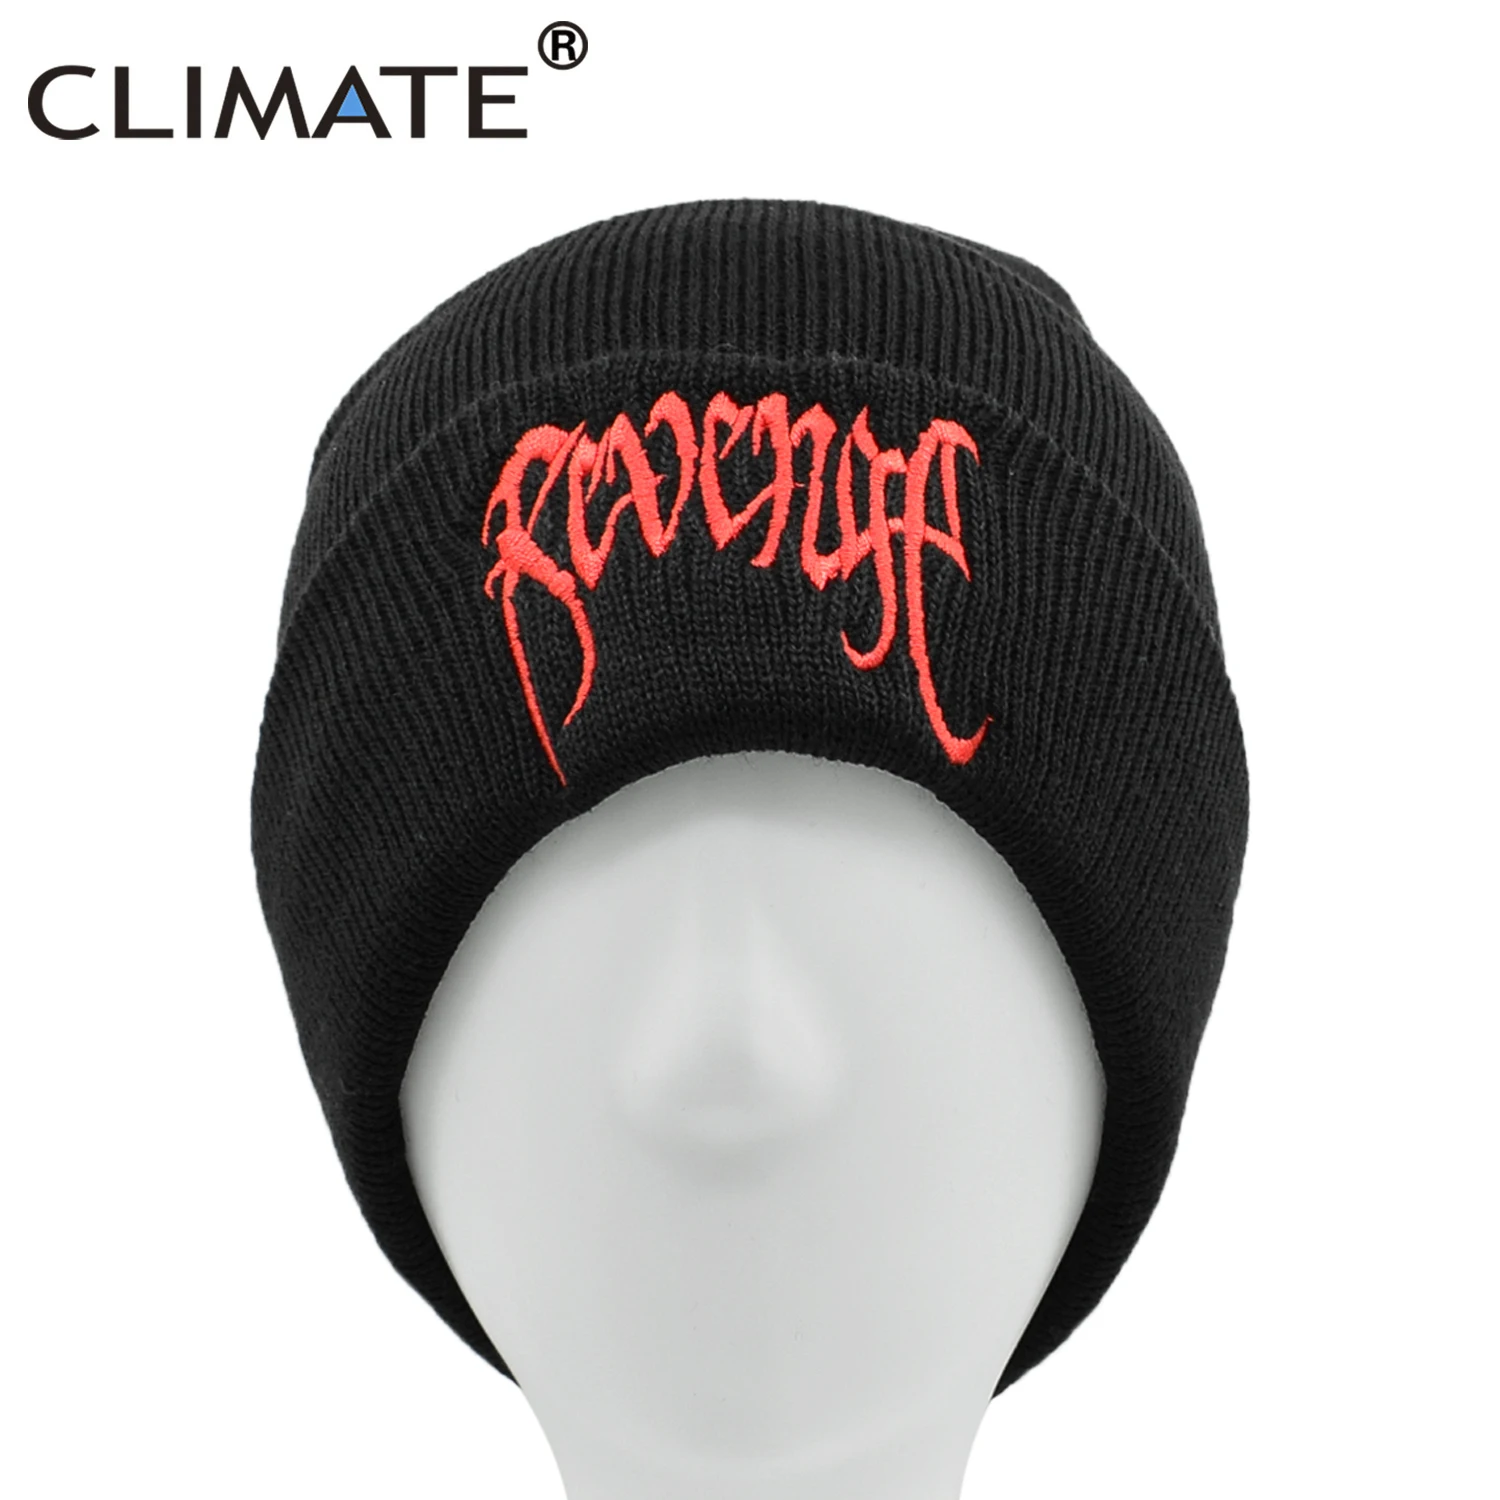 CLIMATE Revenge Men's Winter Hat Black 4